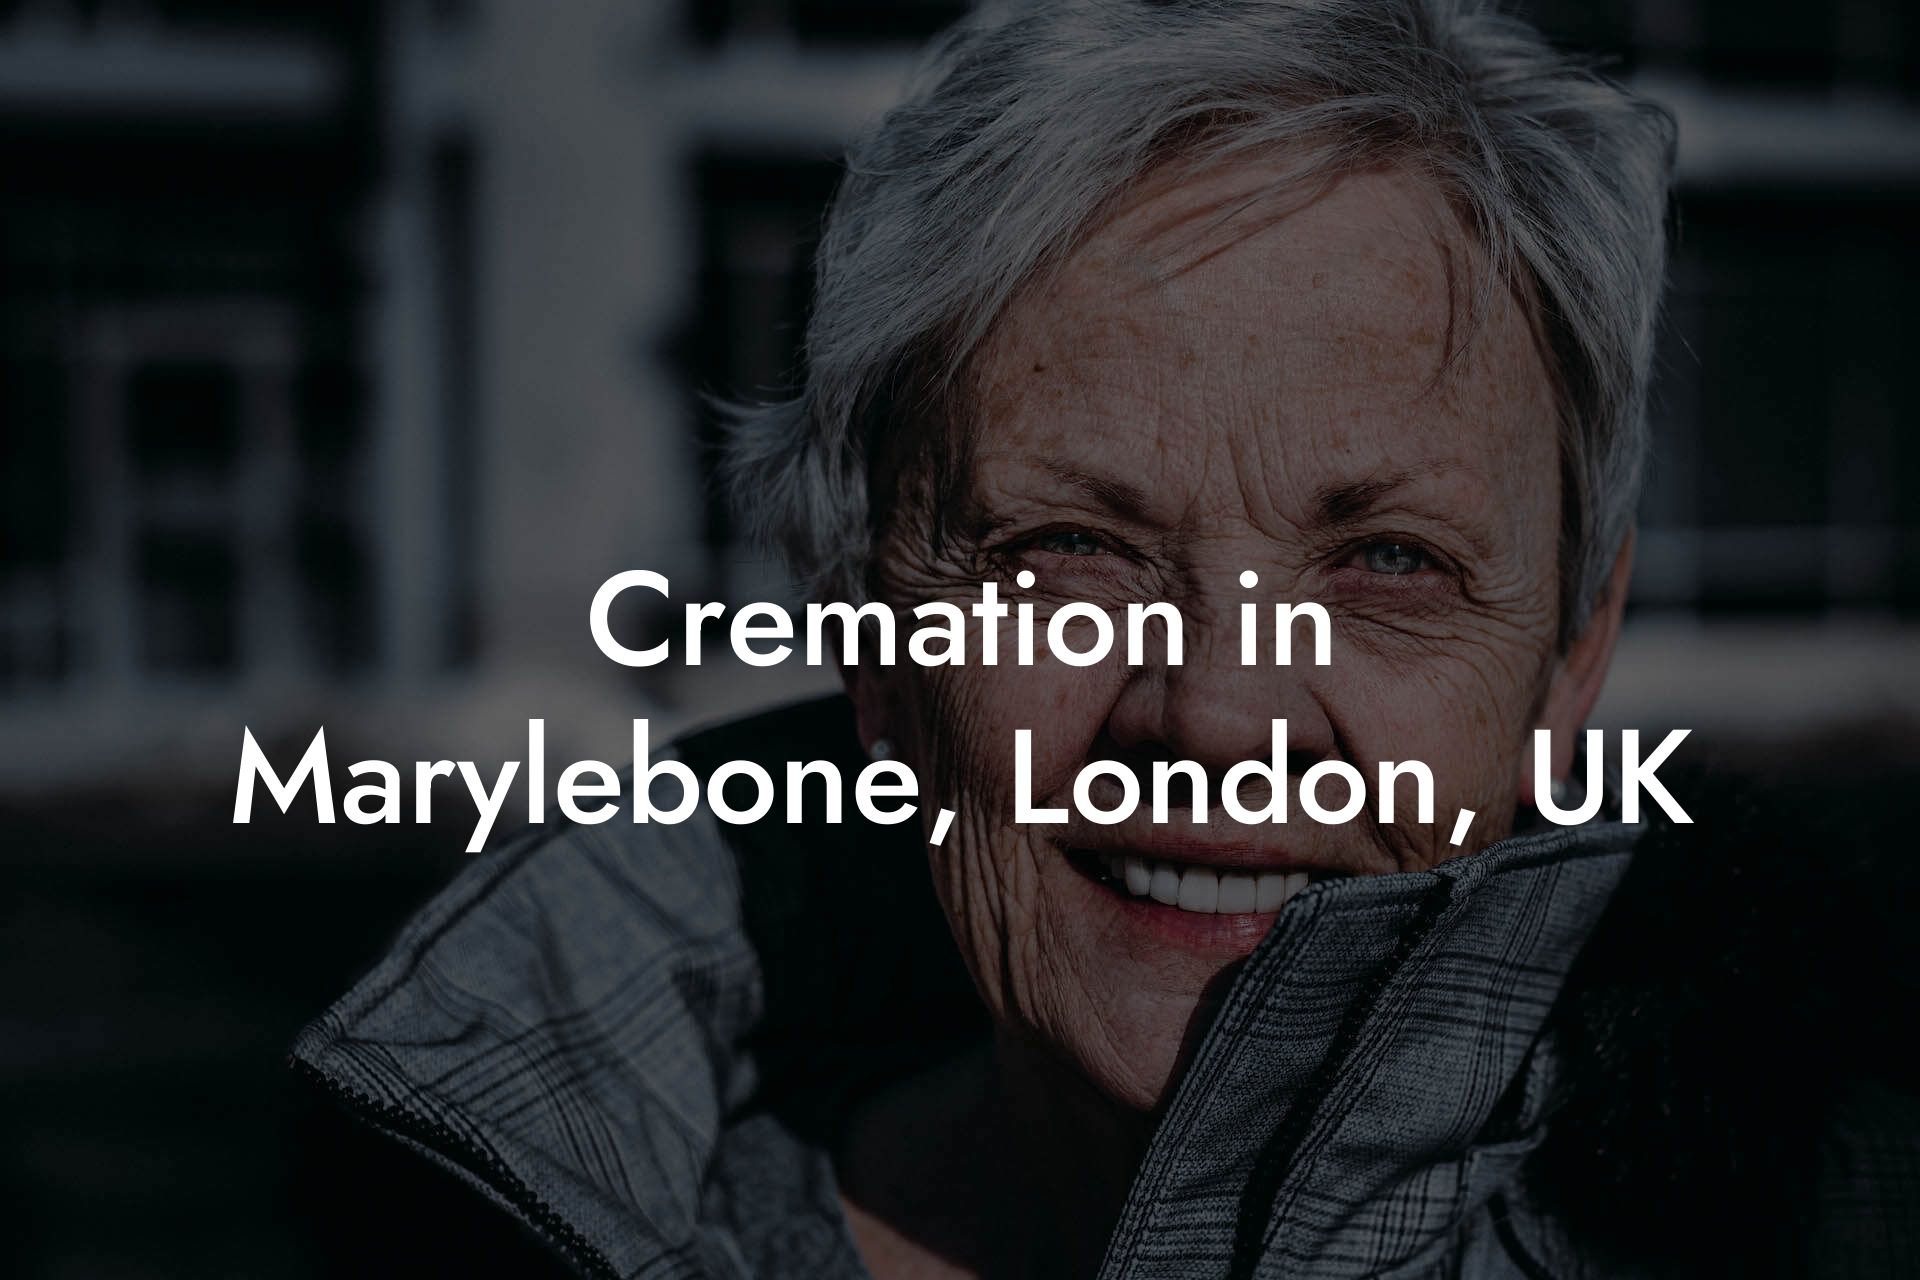 Cremation in Marylebone, London, UK